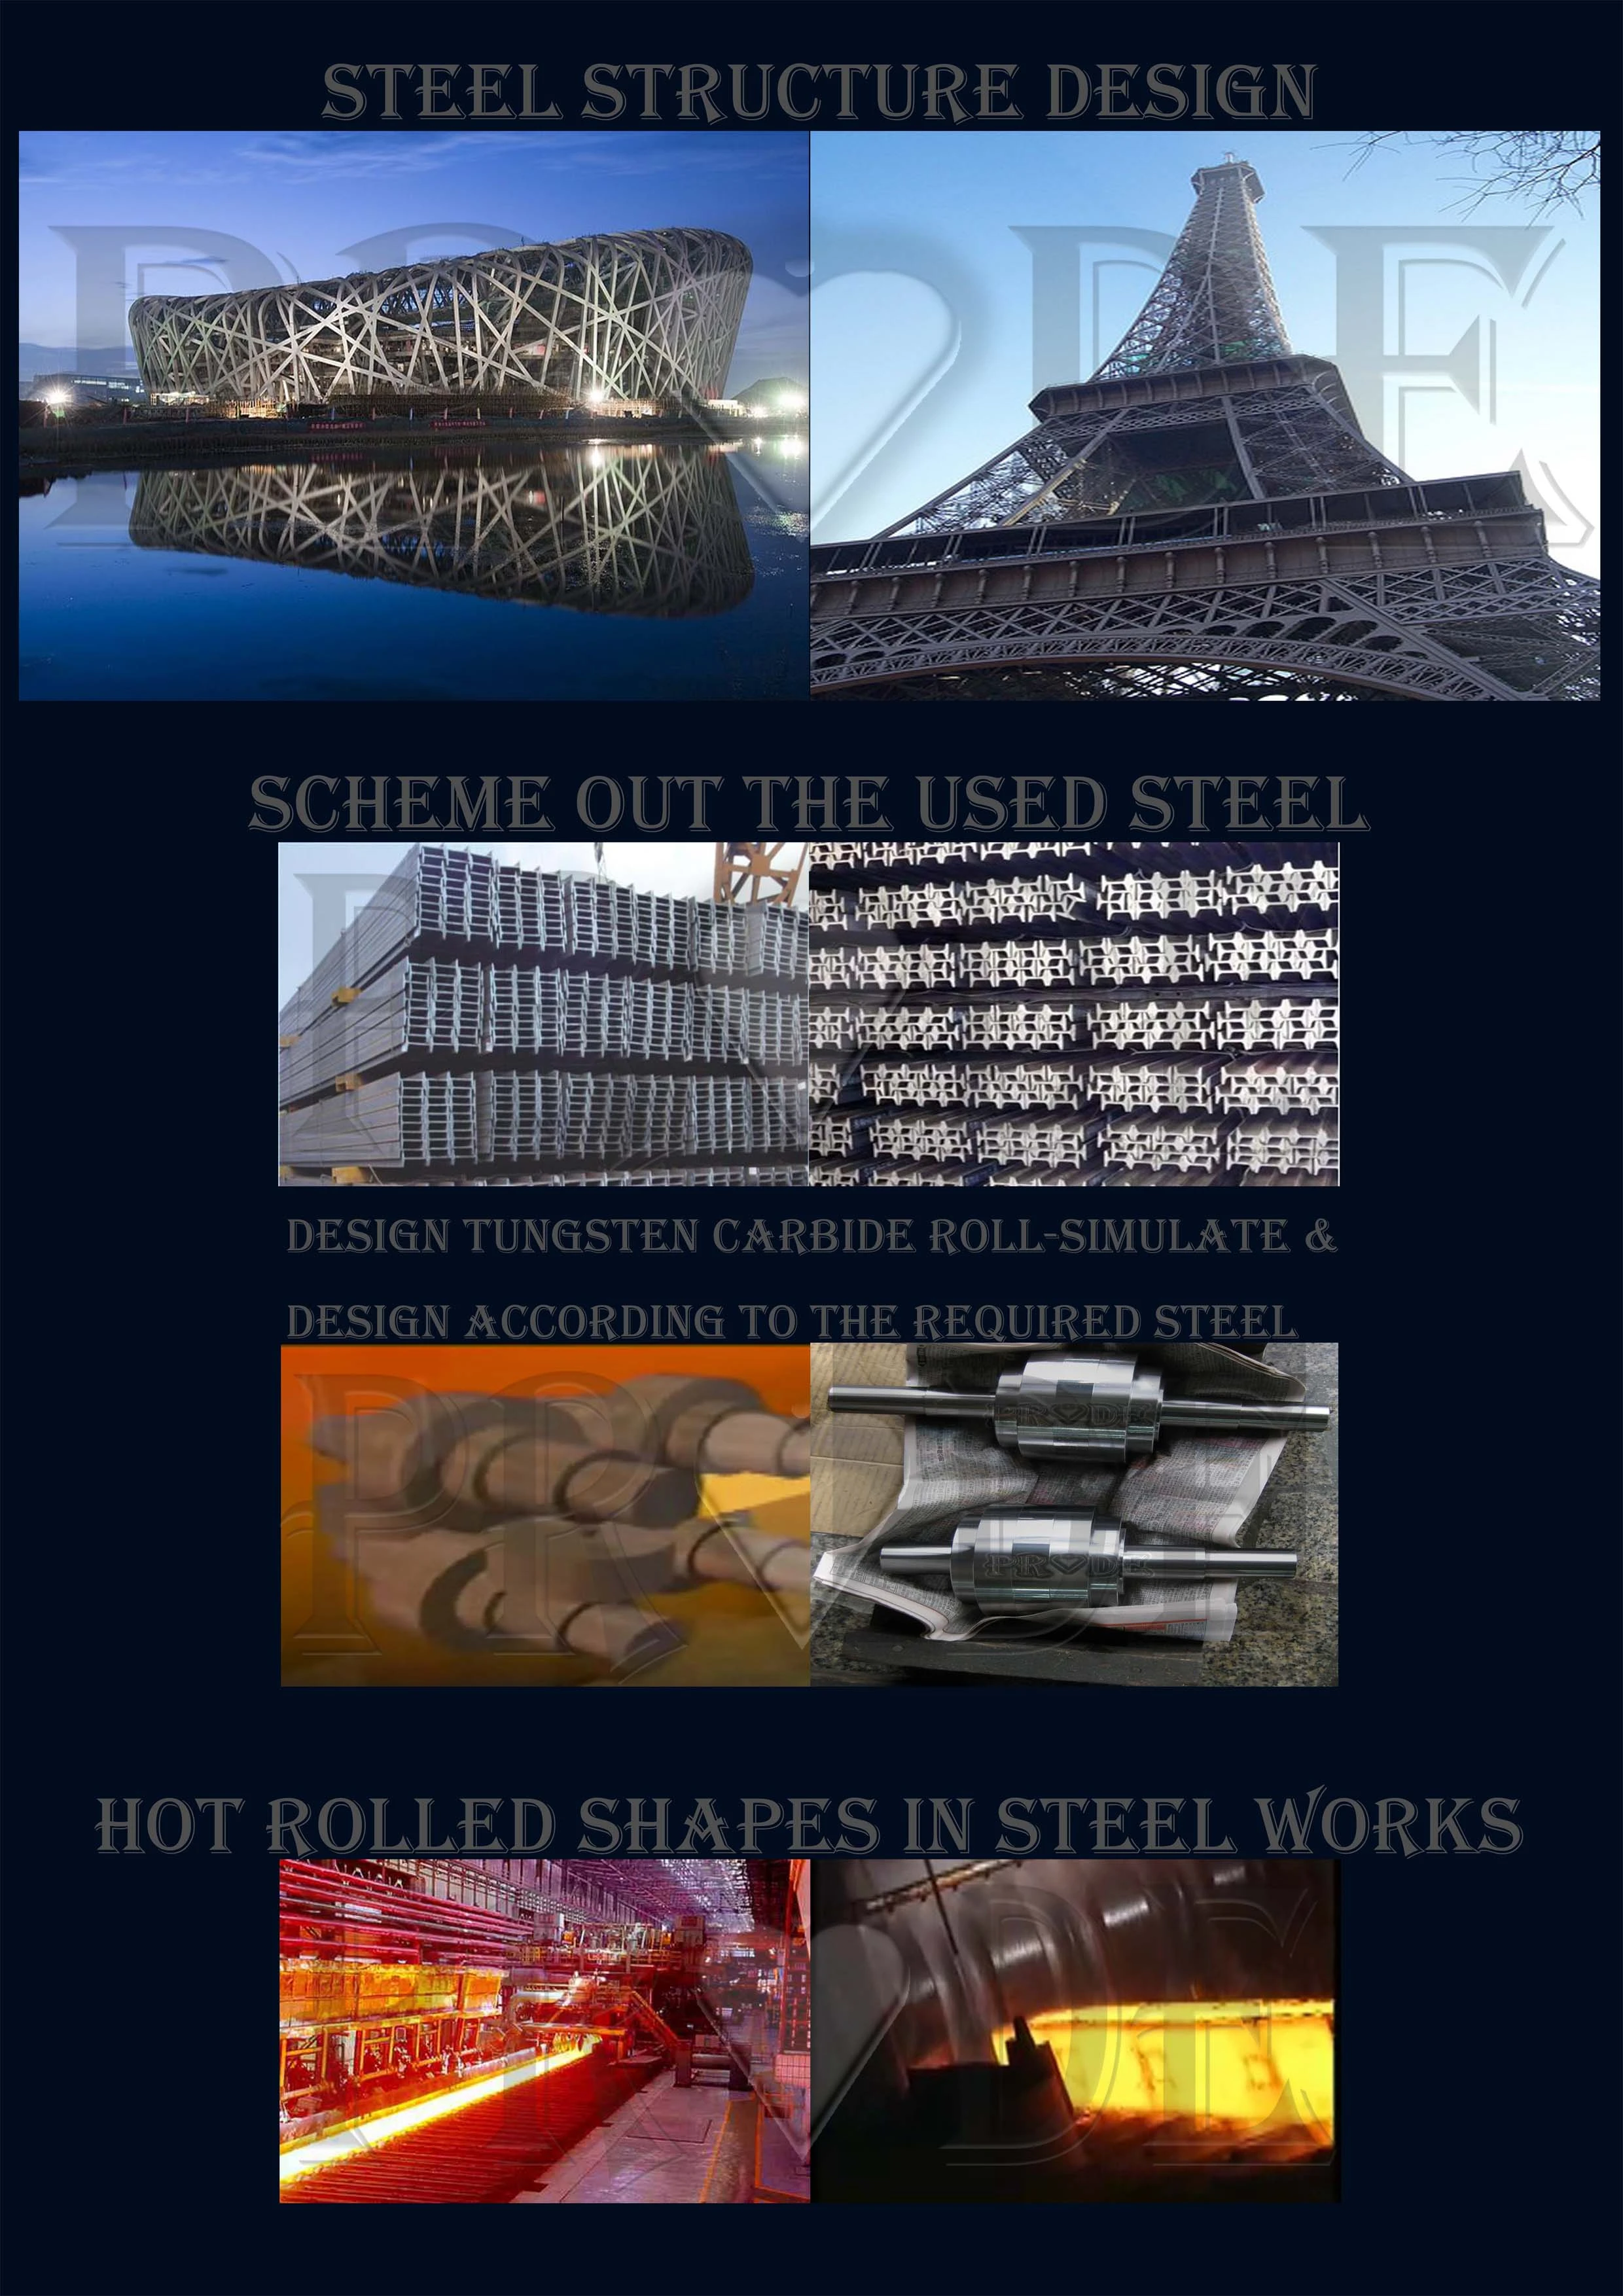 鋼鐵廠 Iron and stainless steel factory